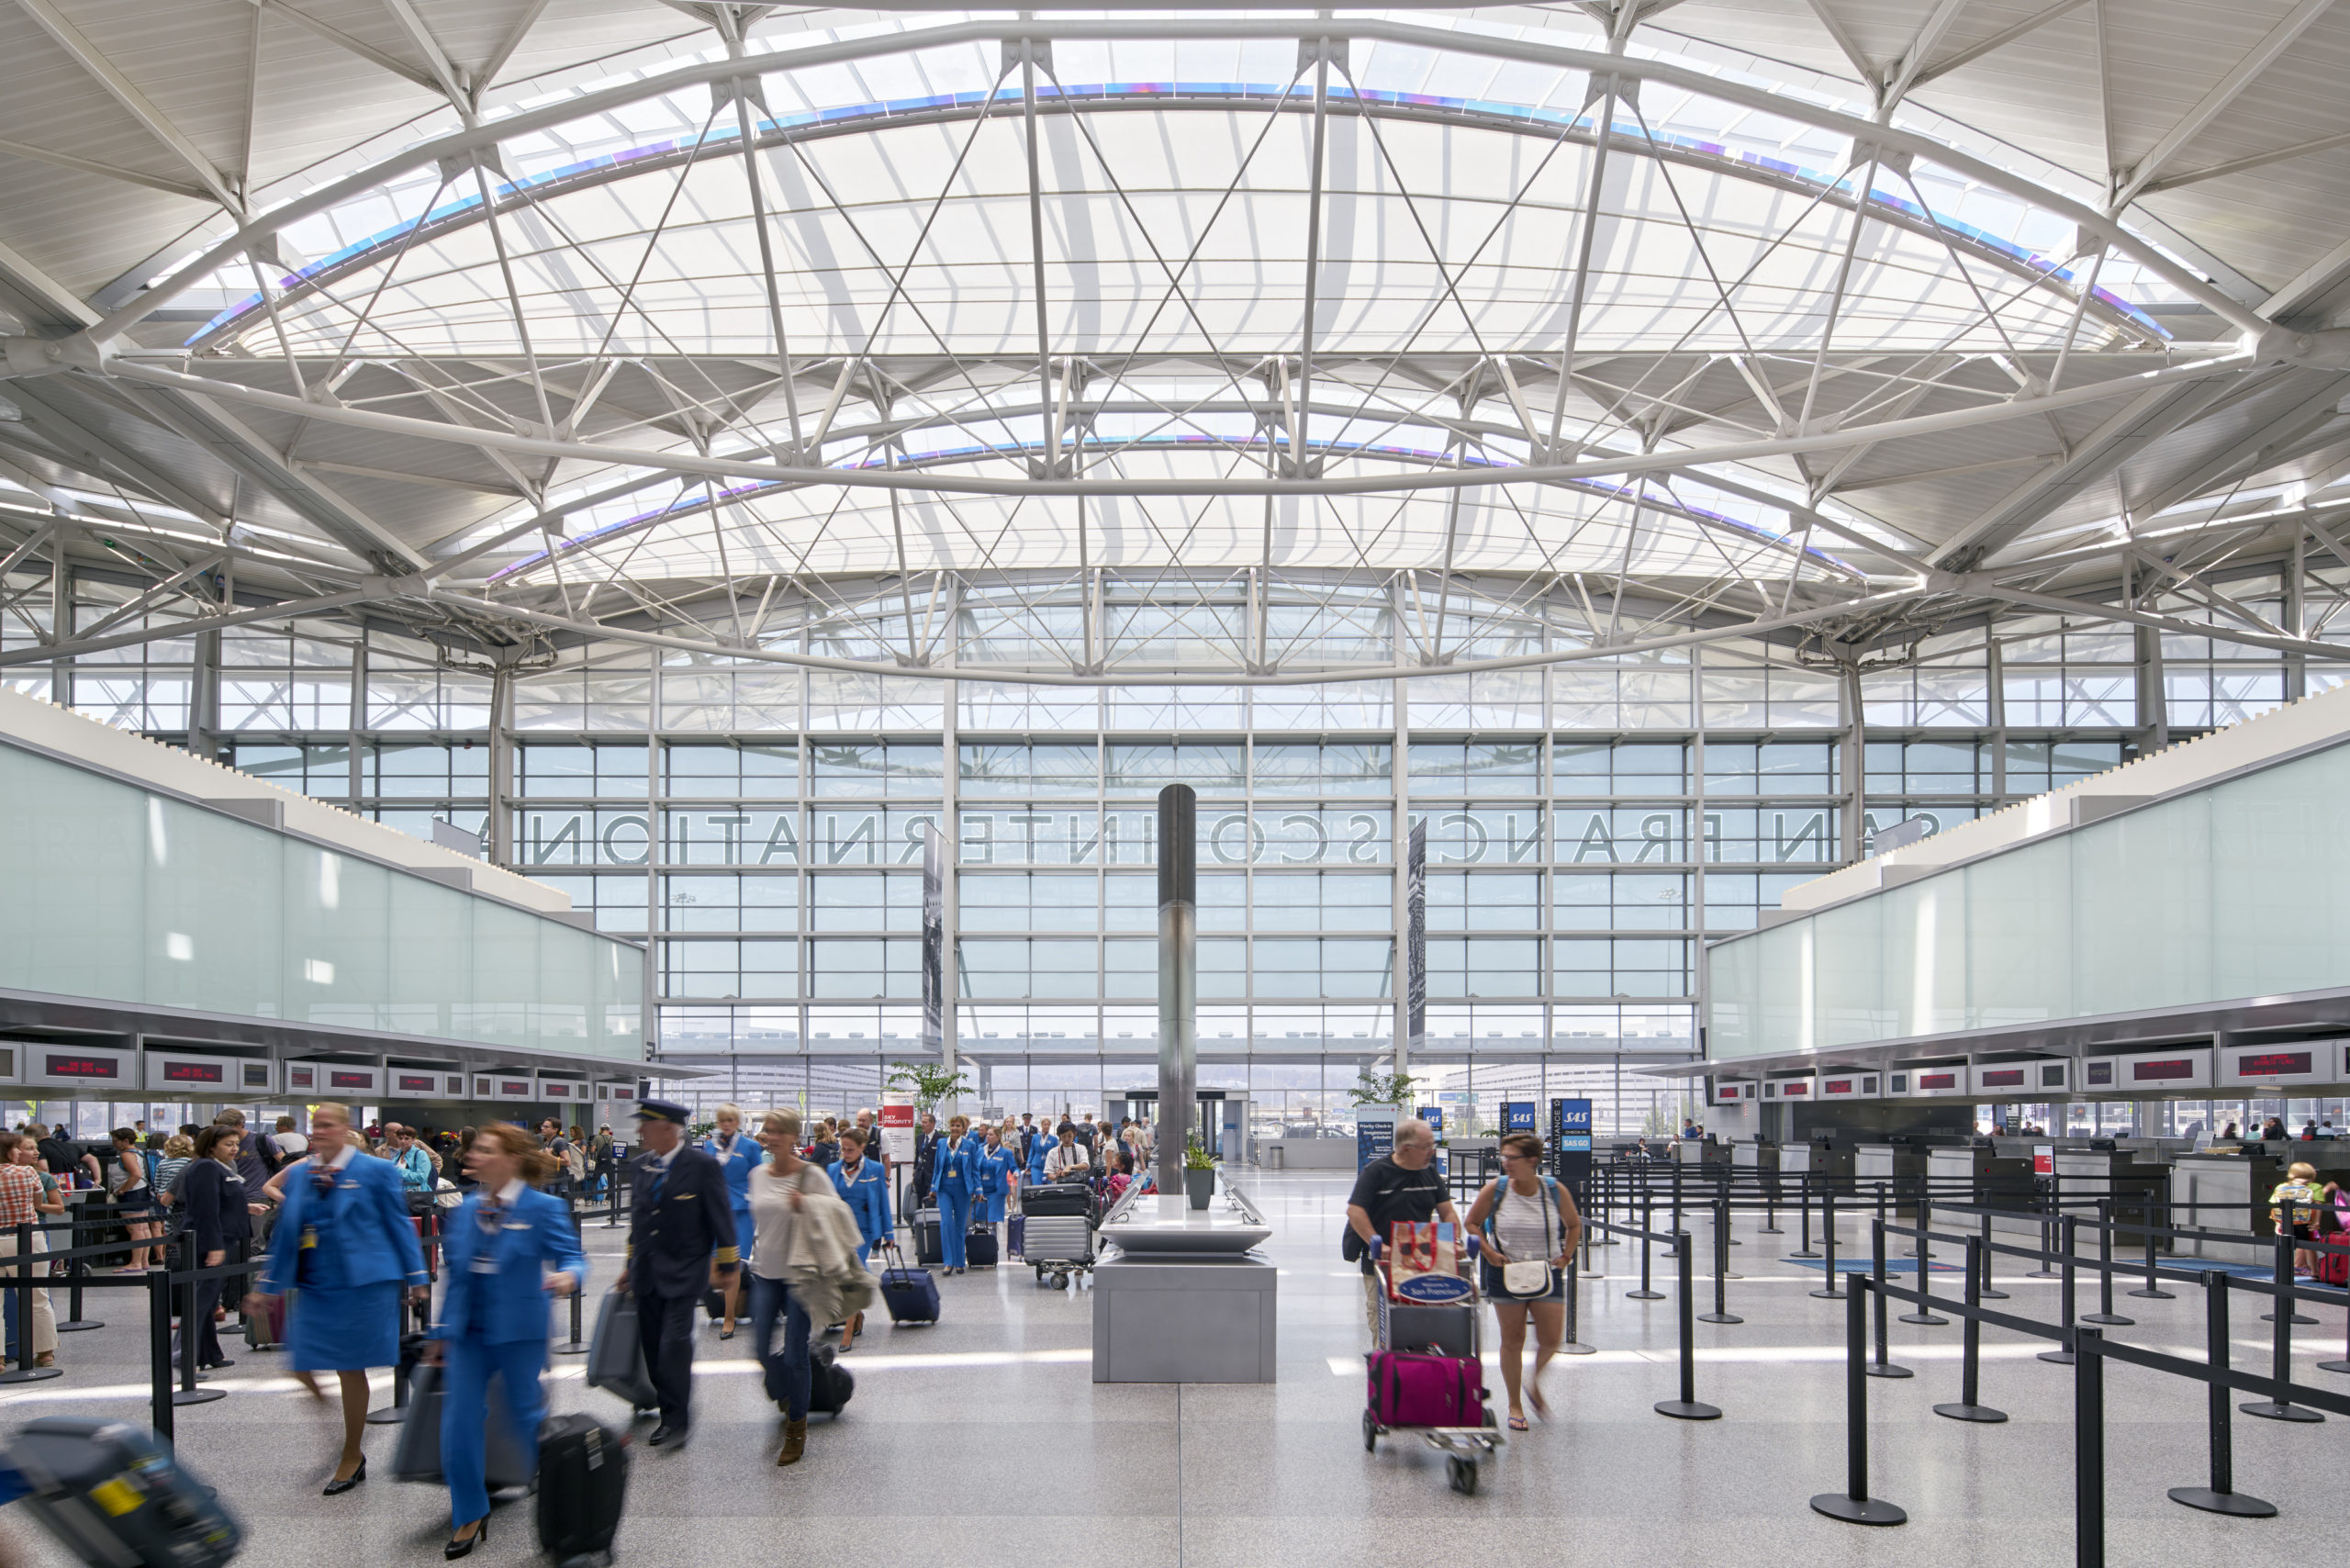 【携程攻略】旧金山国际机场怎么样/怎么去,旧金山国际机场用户点评/评价